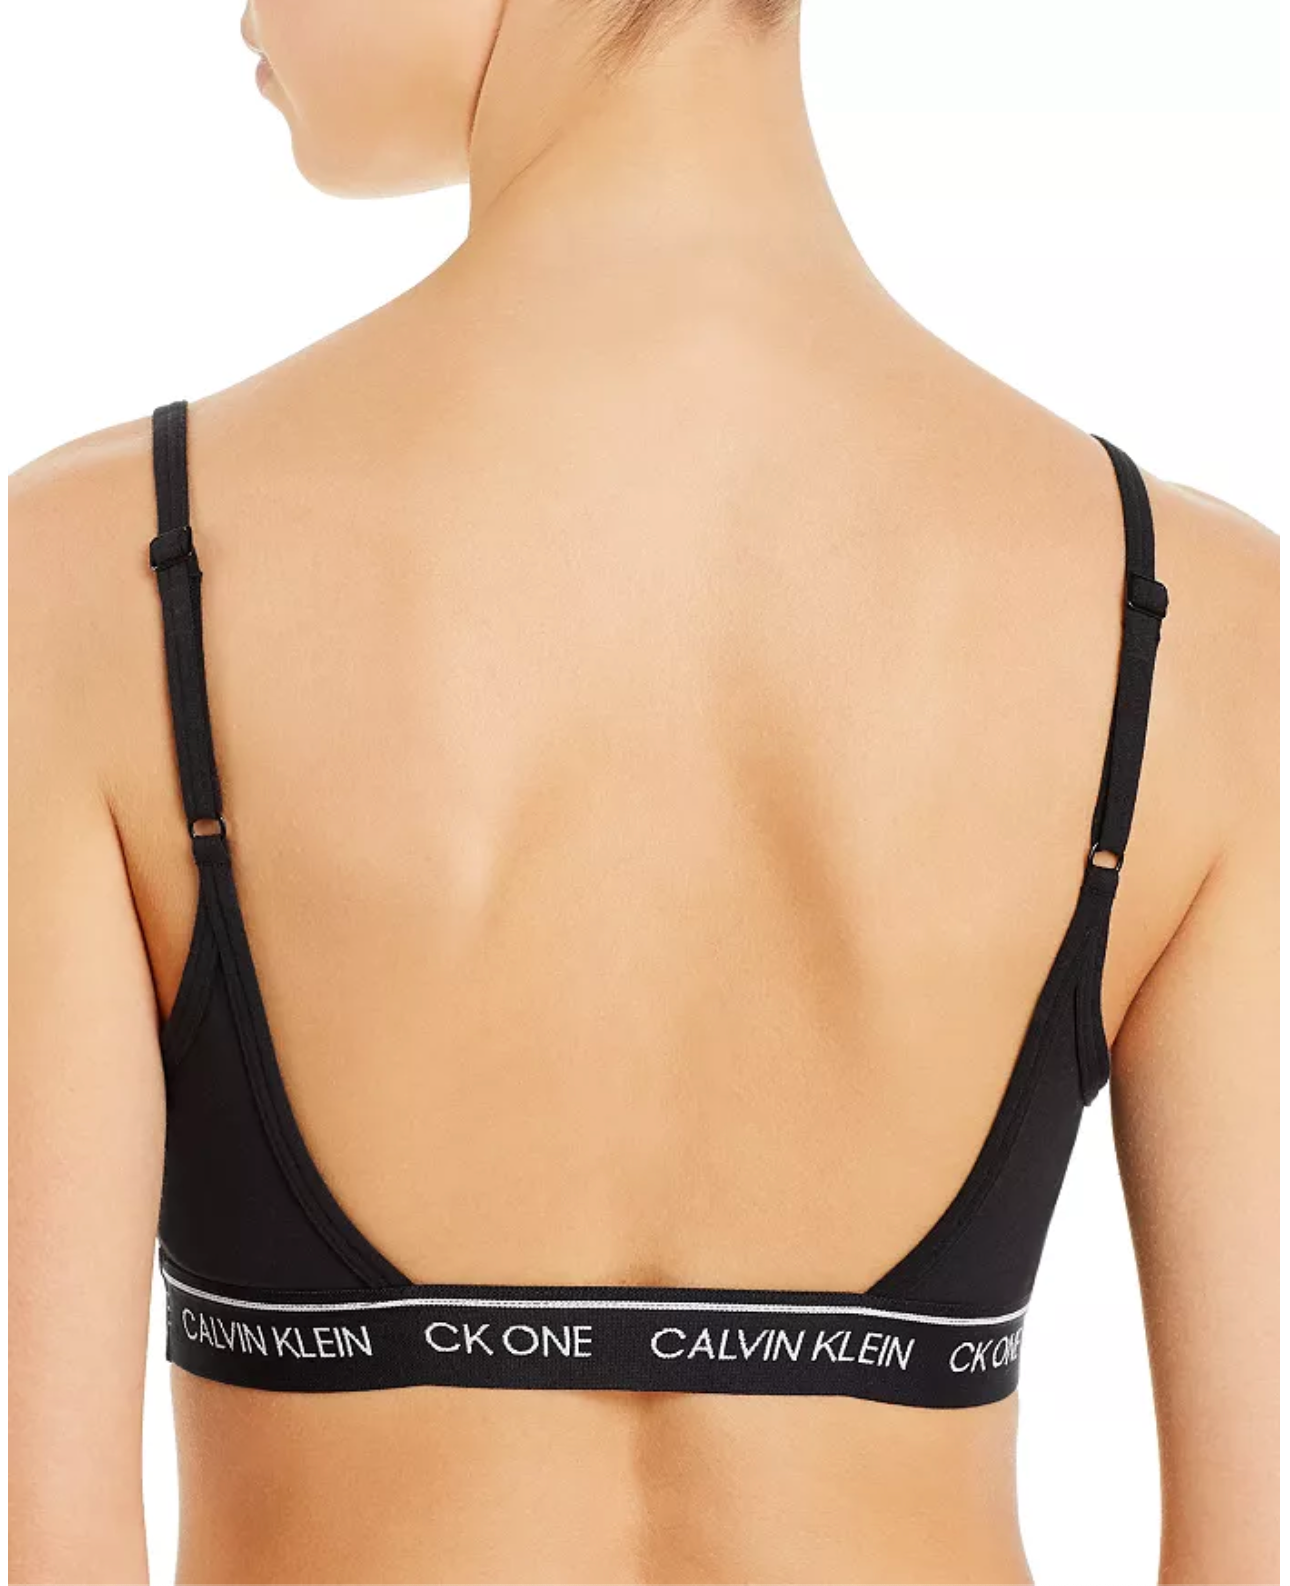 Calvin Klein CK ONE Unlined Bralette